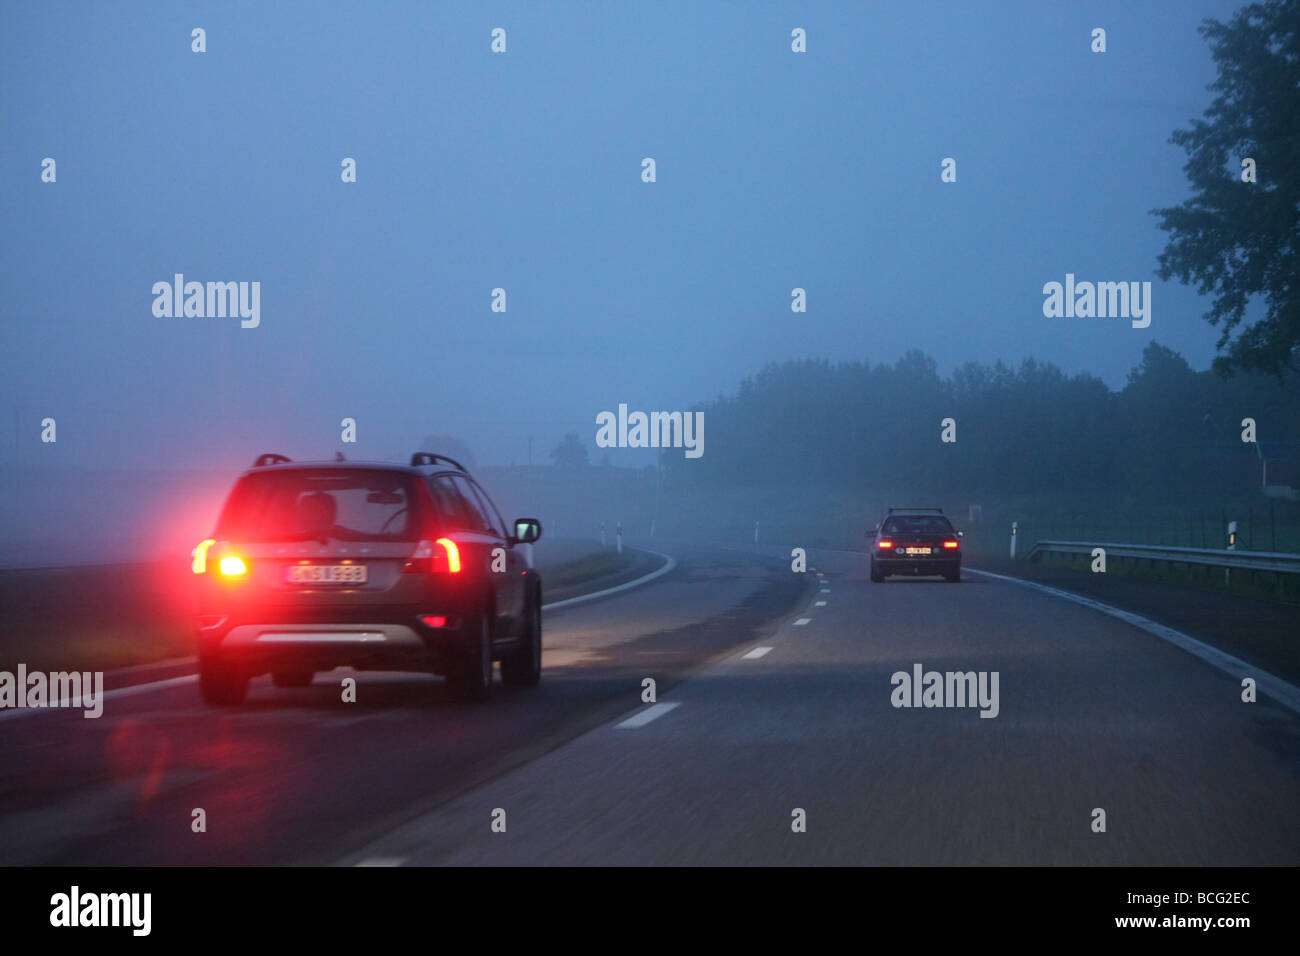 Auto auf eine dunkle, neblige Autobahn mit Nebel-Warnleuchte leuchtet. Stockfoto